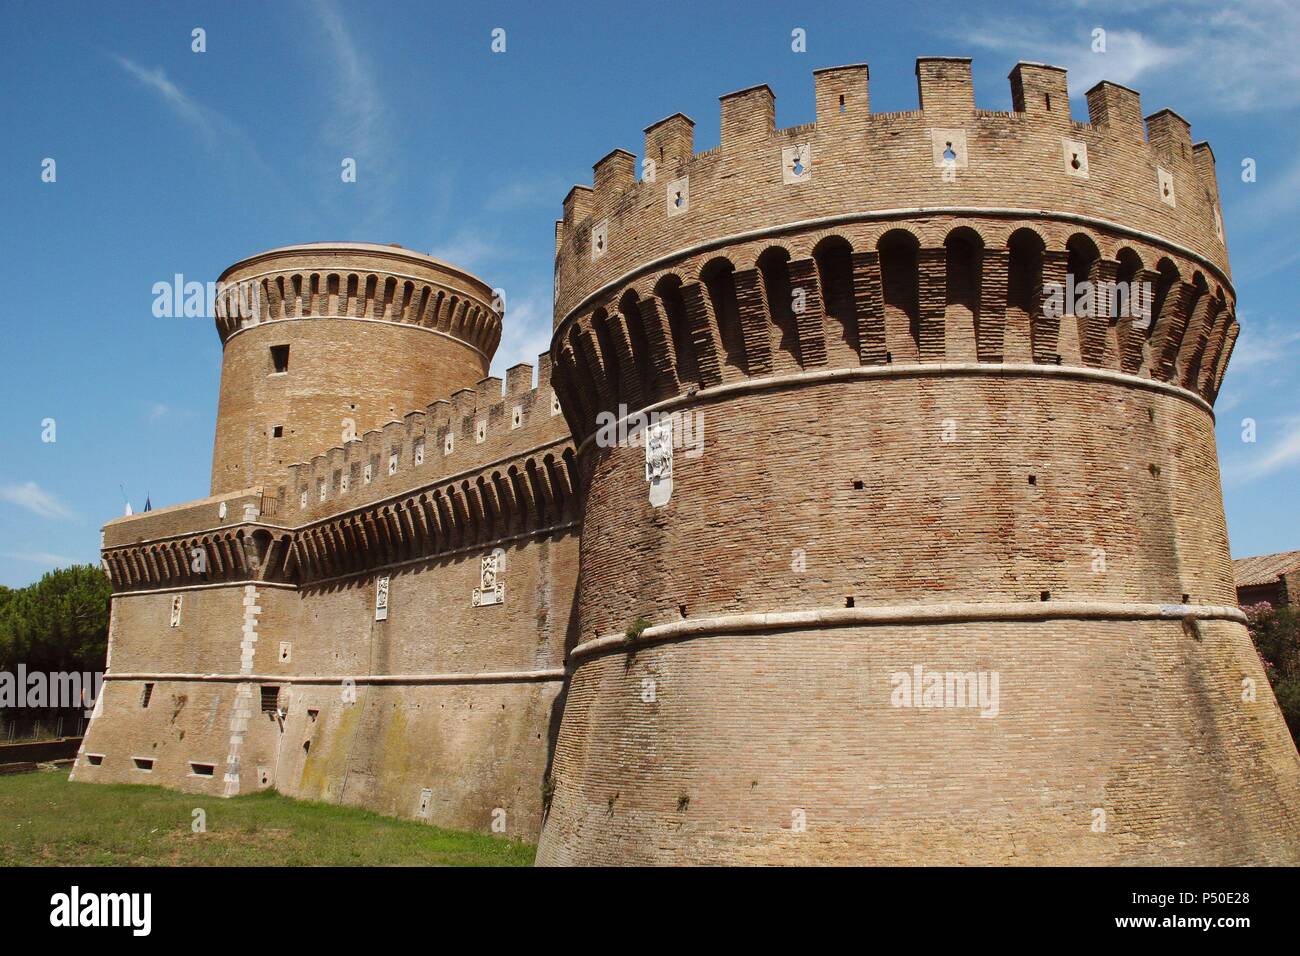 Il Castell di Ostia o Castell di papa Giulio II. È stato costruito da Baccio Pontelli (1450-1492). Ostia. La regione Lazio. L'Italia. L'Europa. Foto Stock